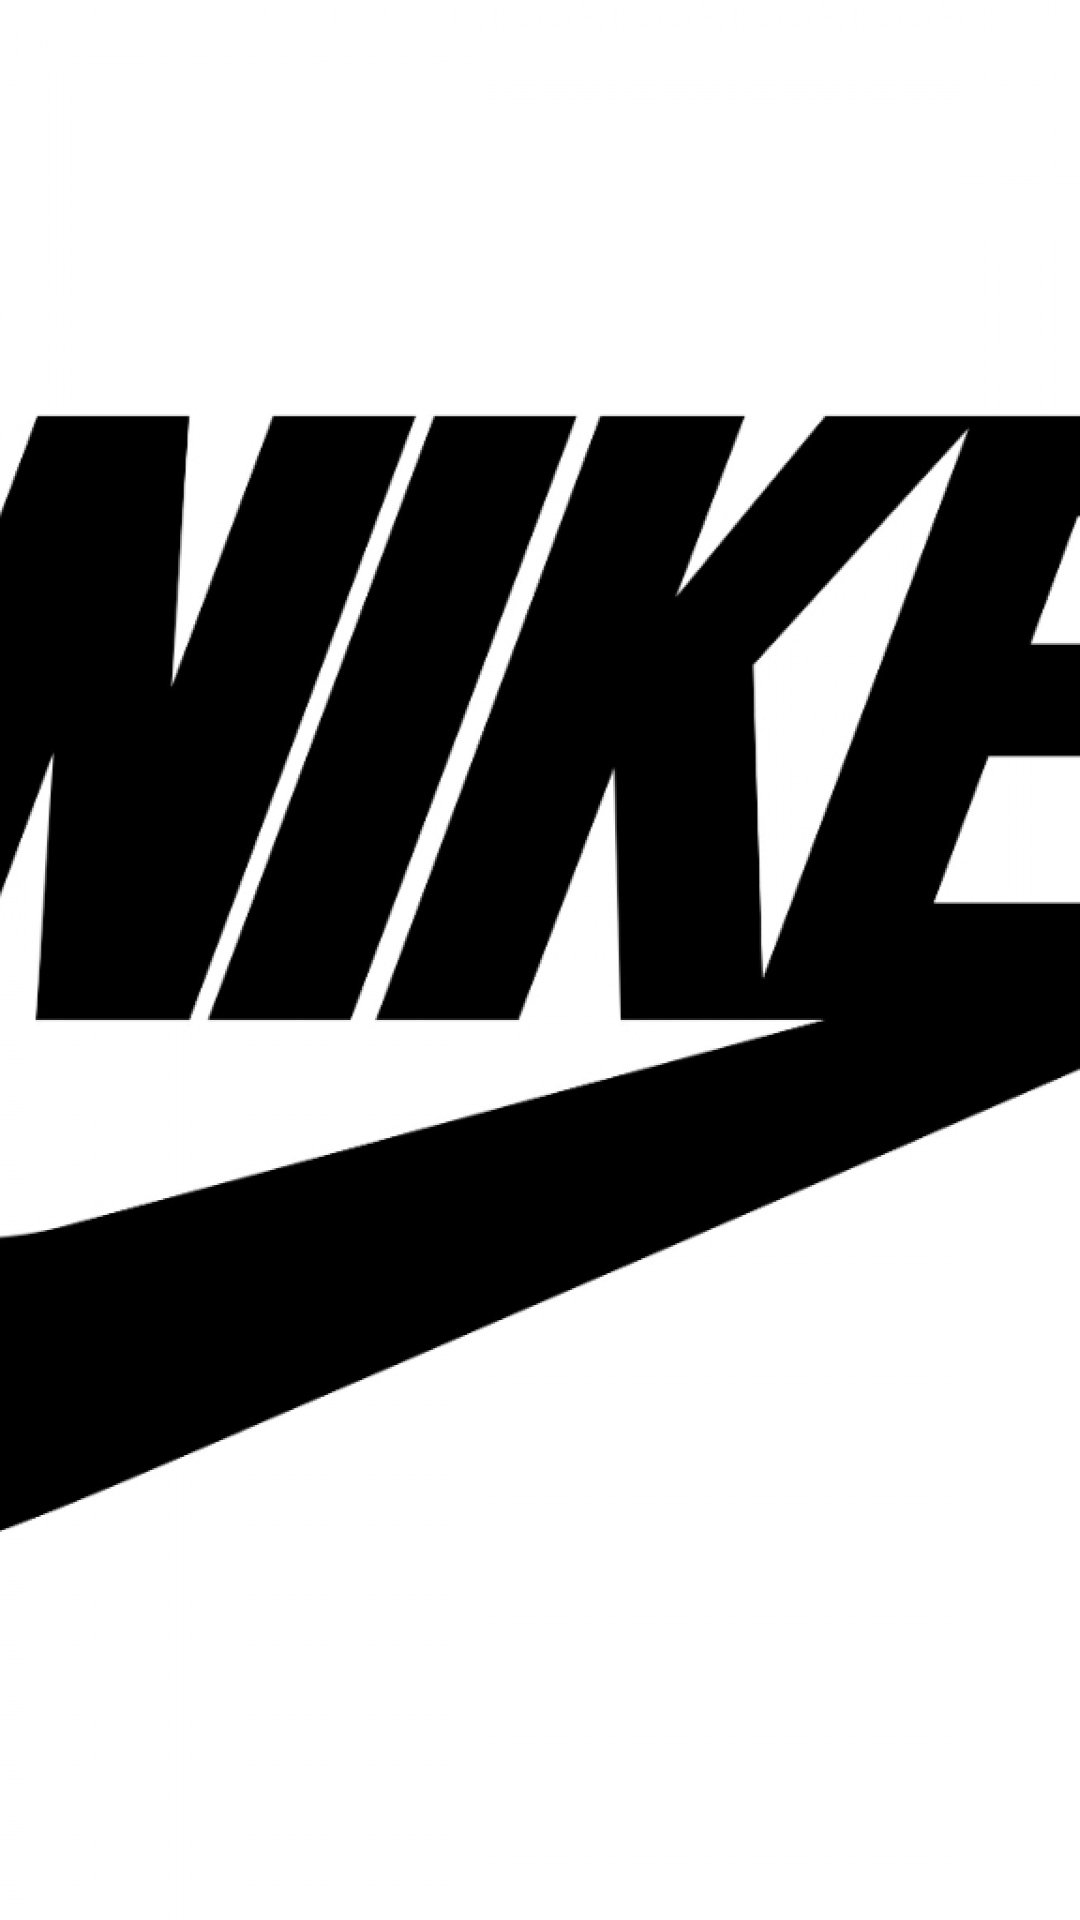 Wallpaper black logo logo black Nike nike images for desktop section  минимализм  download